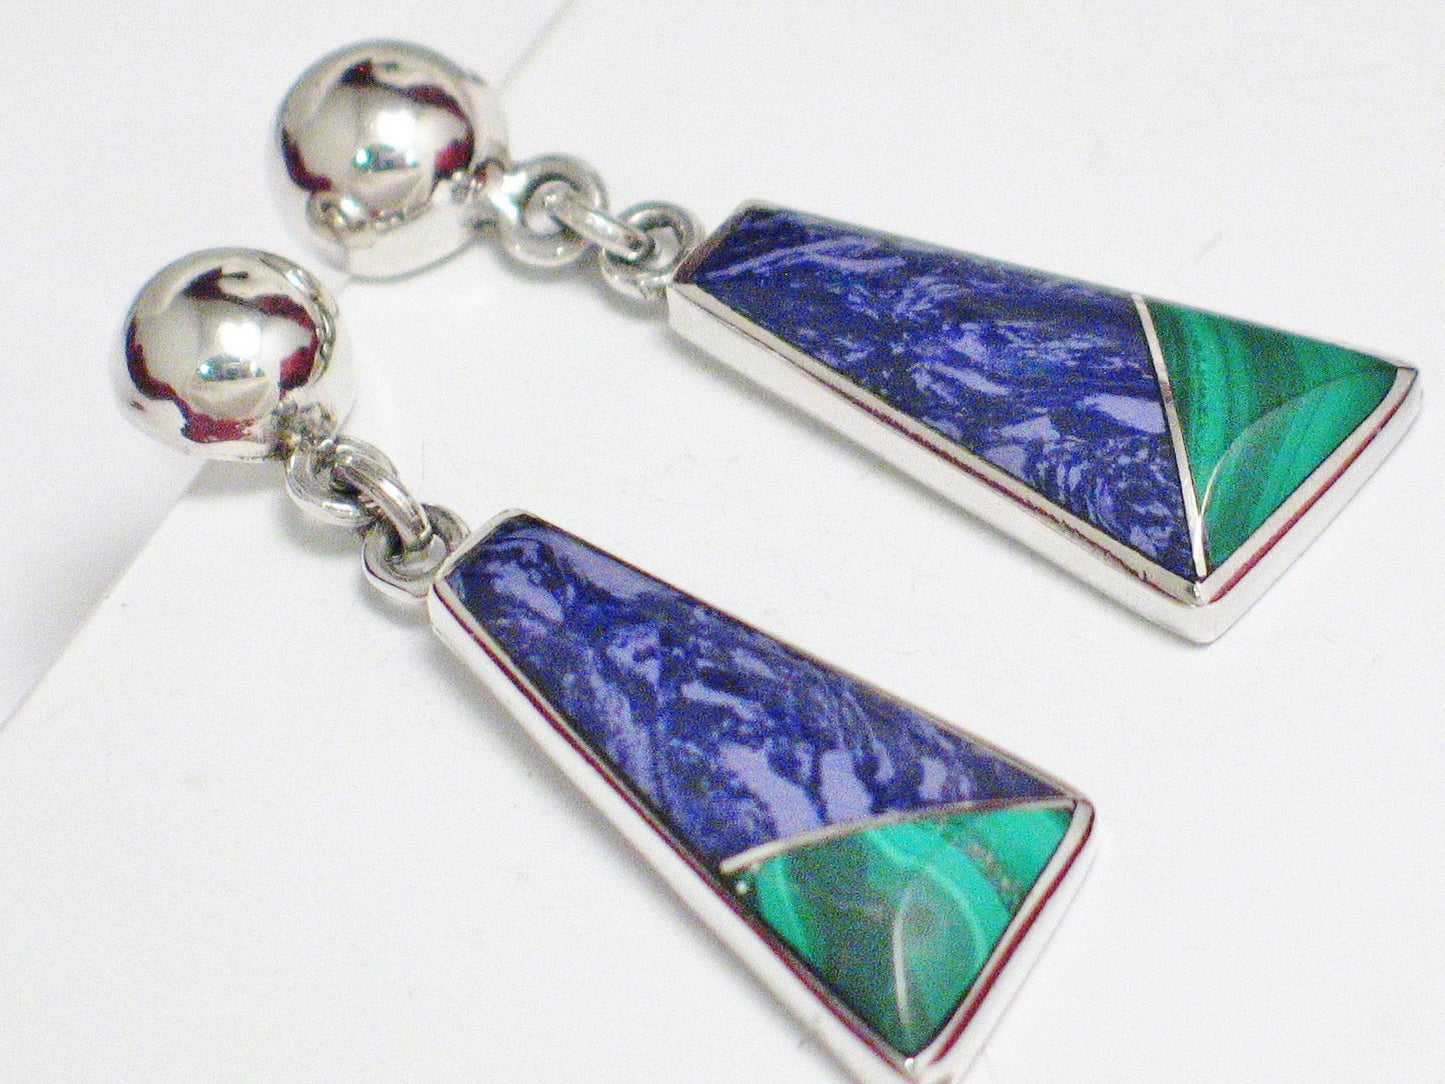 Dangle Earrings | Women's Long Sterling Silver Asymmetrical Triangle Purple & Green Stone Earrings | Jewelry